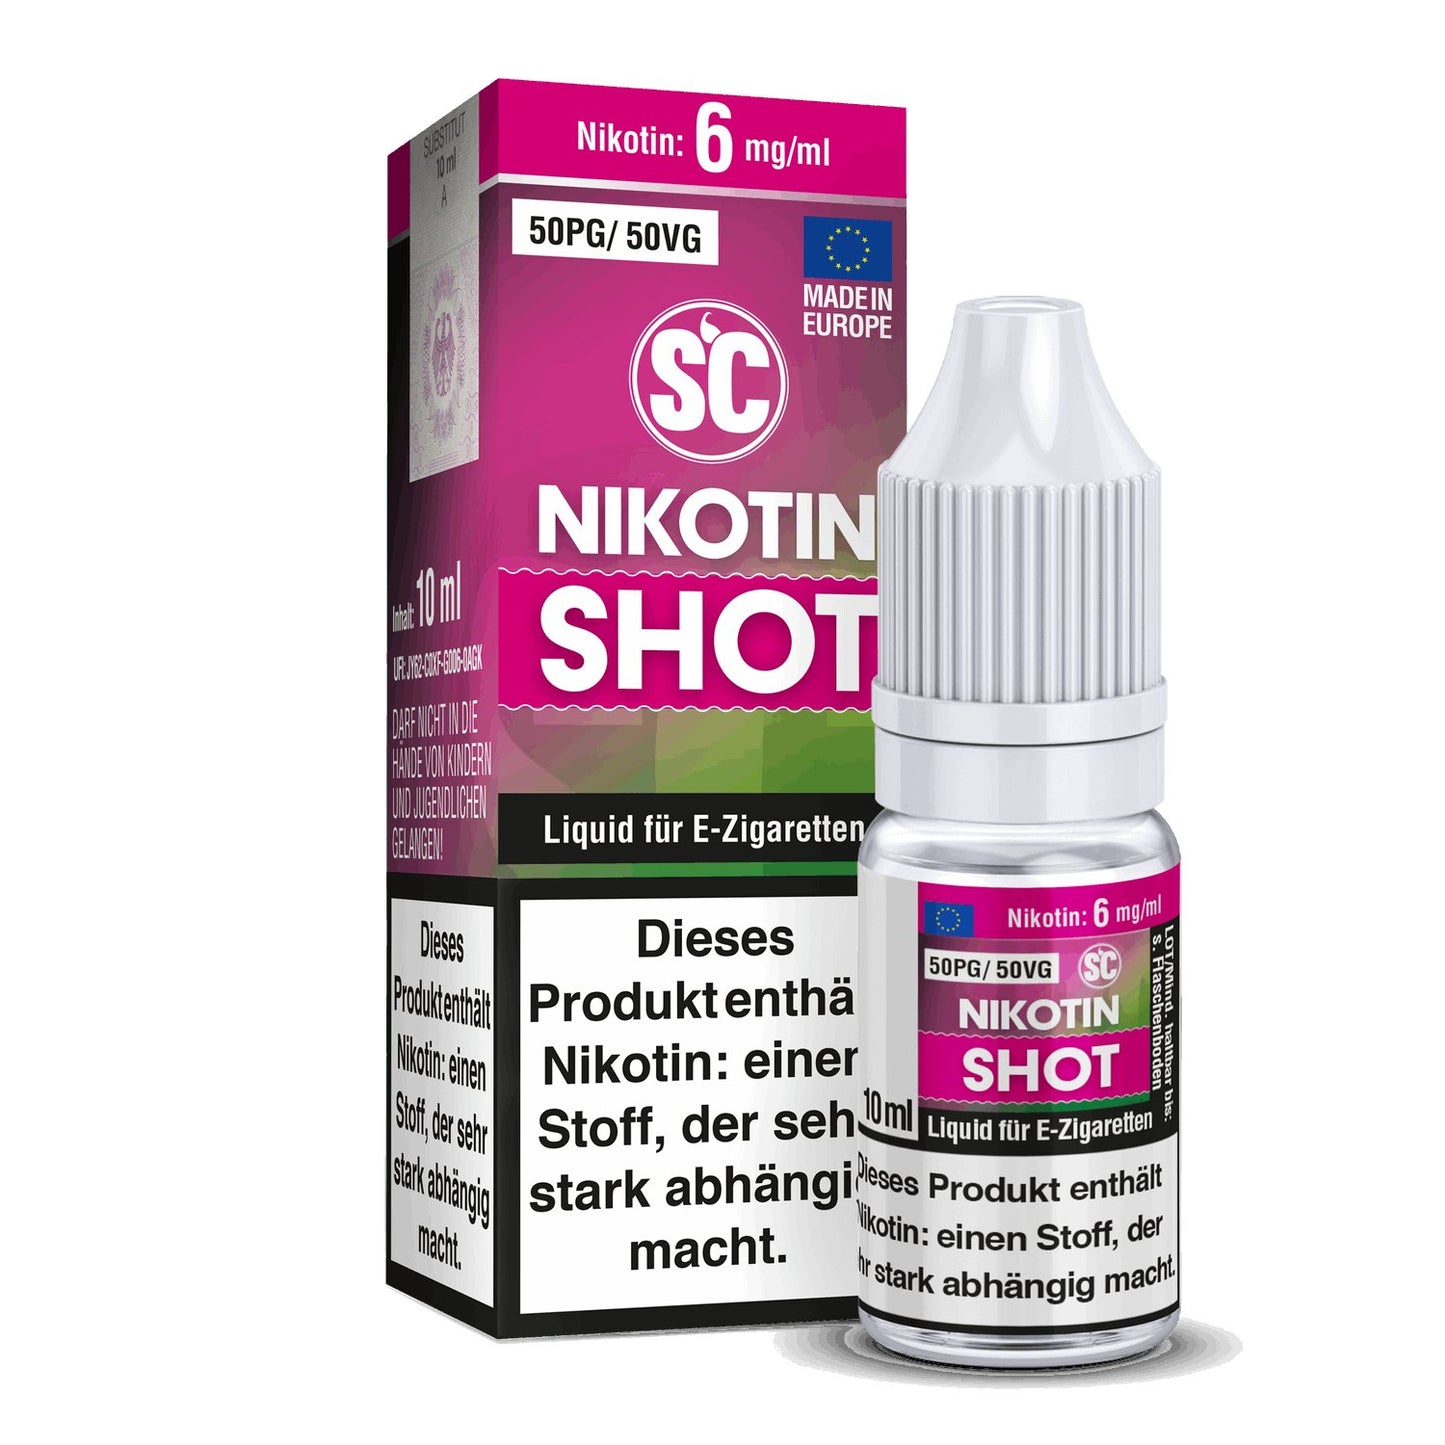 SC - Nikotin Shot - 10ml (50PG/50VG) - 50PG / 50VG 1er Packung 6 mg/ml- Vapes4you